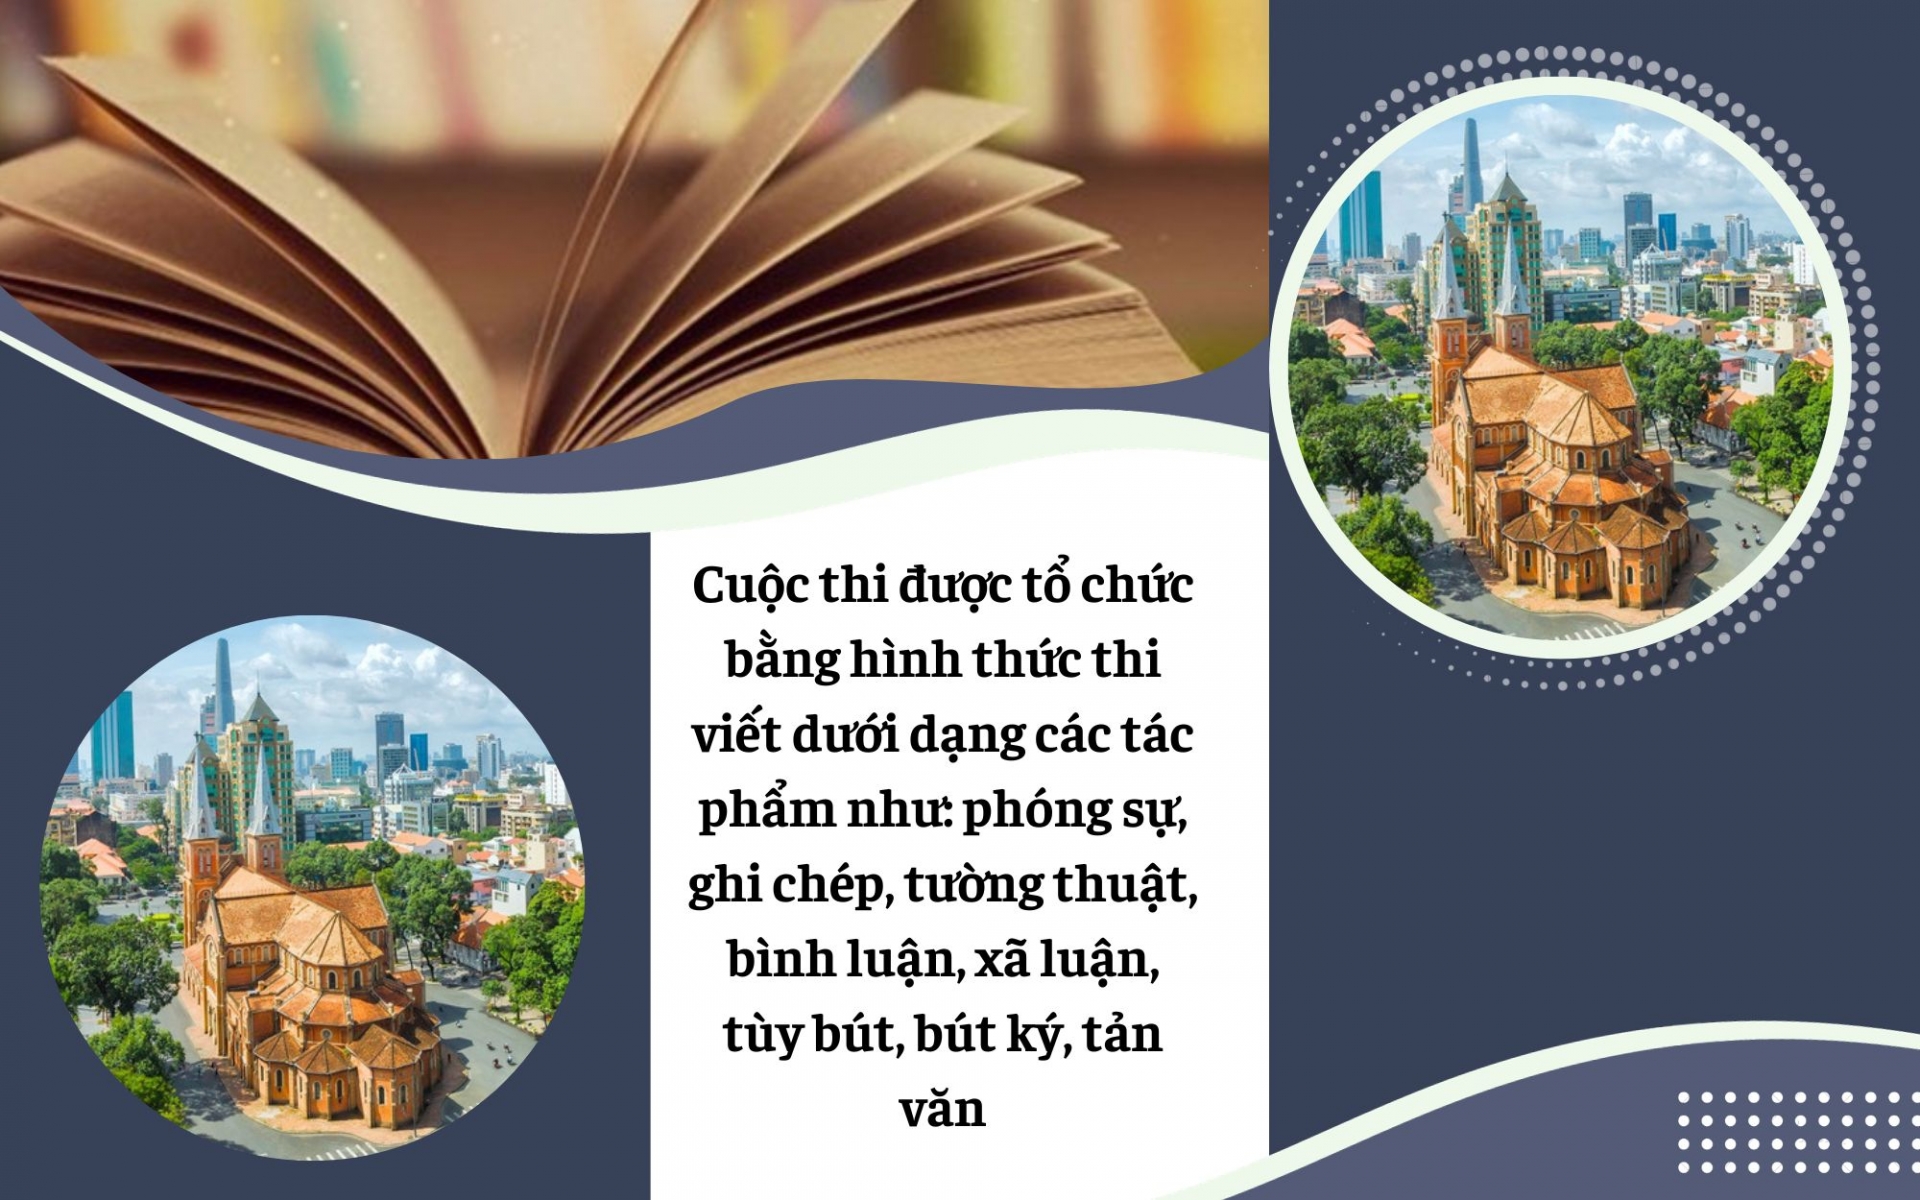 TP Hồ Chí Minh: Phát động cuộc thi viết chủ đề “Thành phố của tôi”